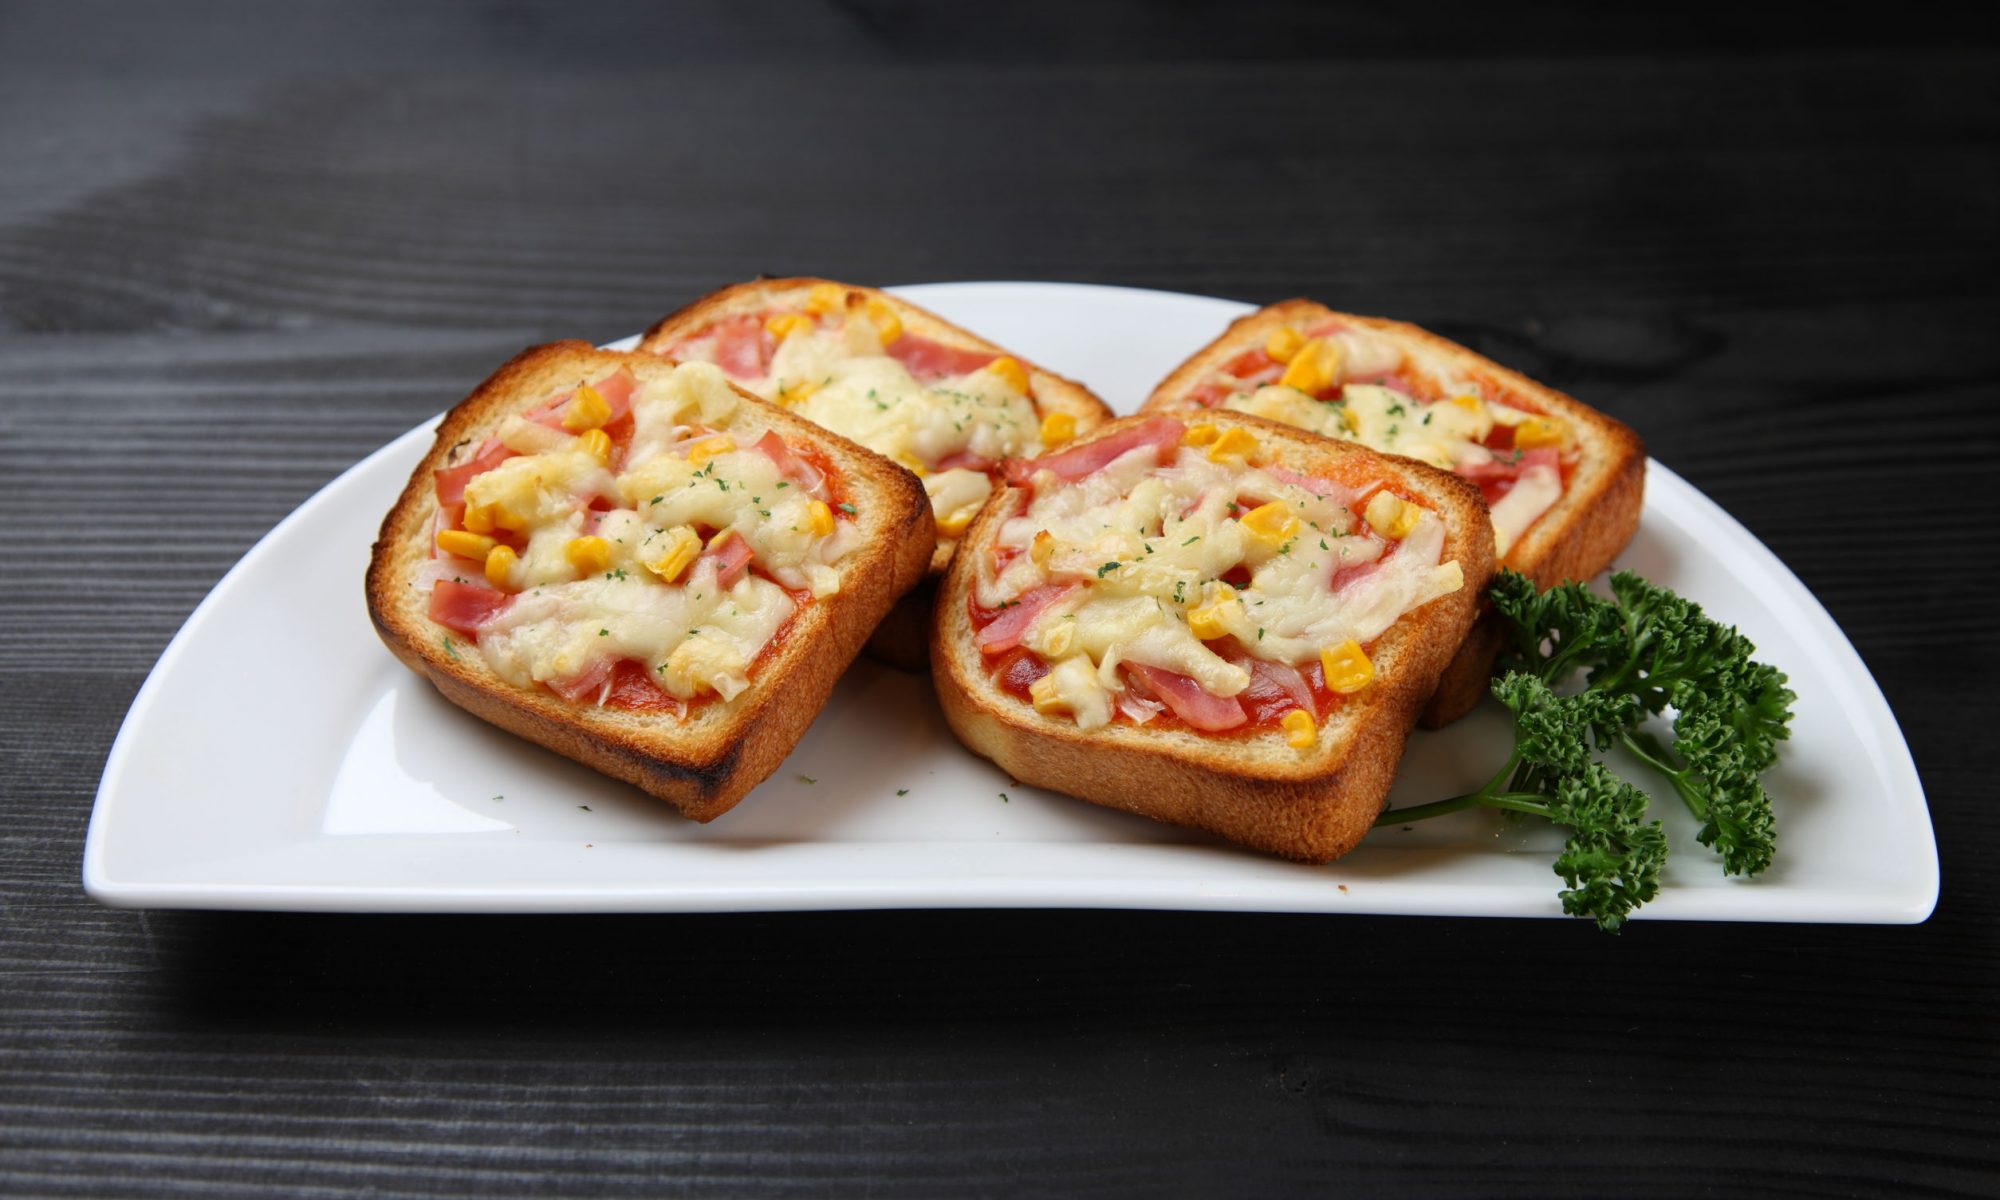 Аппетитные горячие бутерброды (мини-пиццы) с беконом и сыром